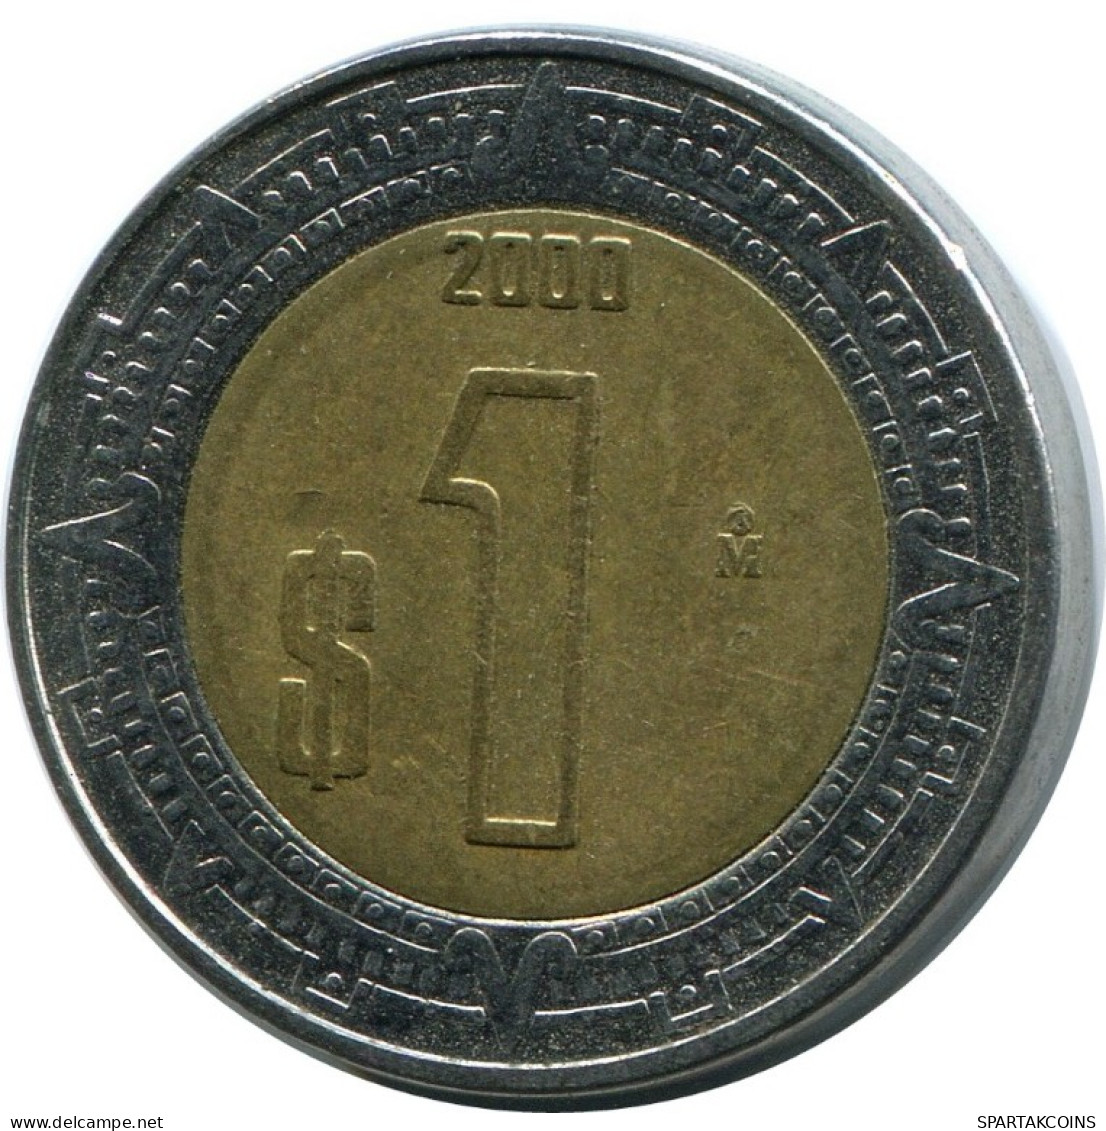 1 PESO 2000 MEXICO Coin #AH501.5.U.A - México